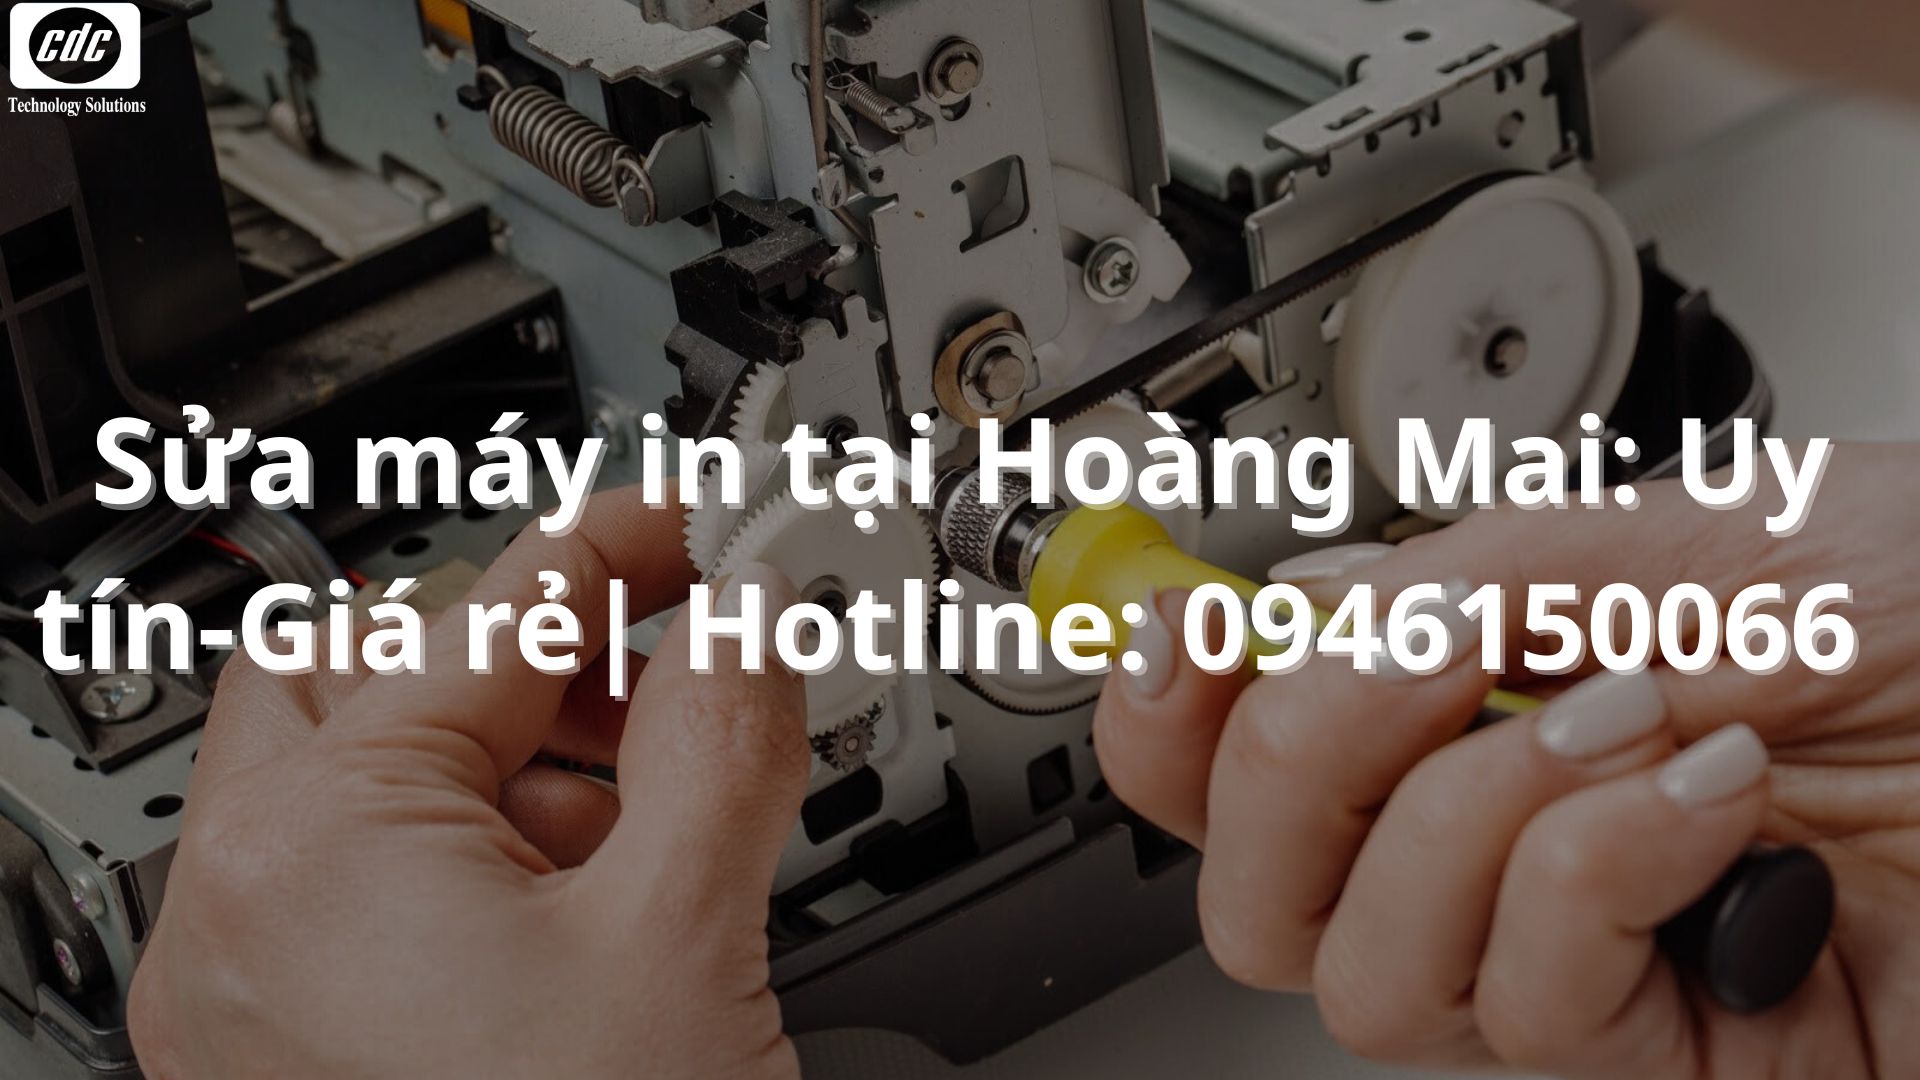 Sửa máy in tại Hoàng Mai: Uy tín-Giá rẻ| Hotline: 0946150066 